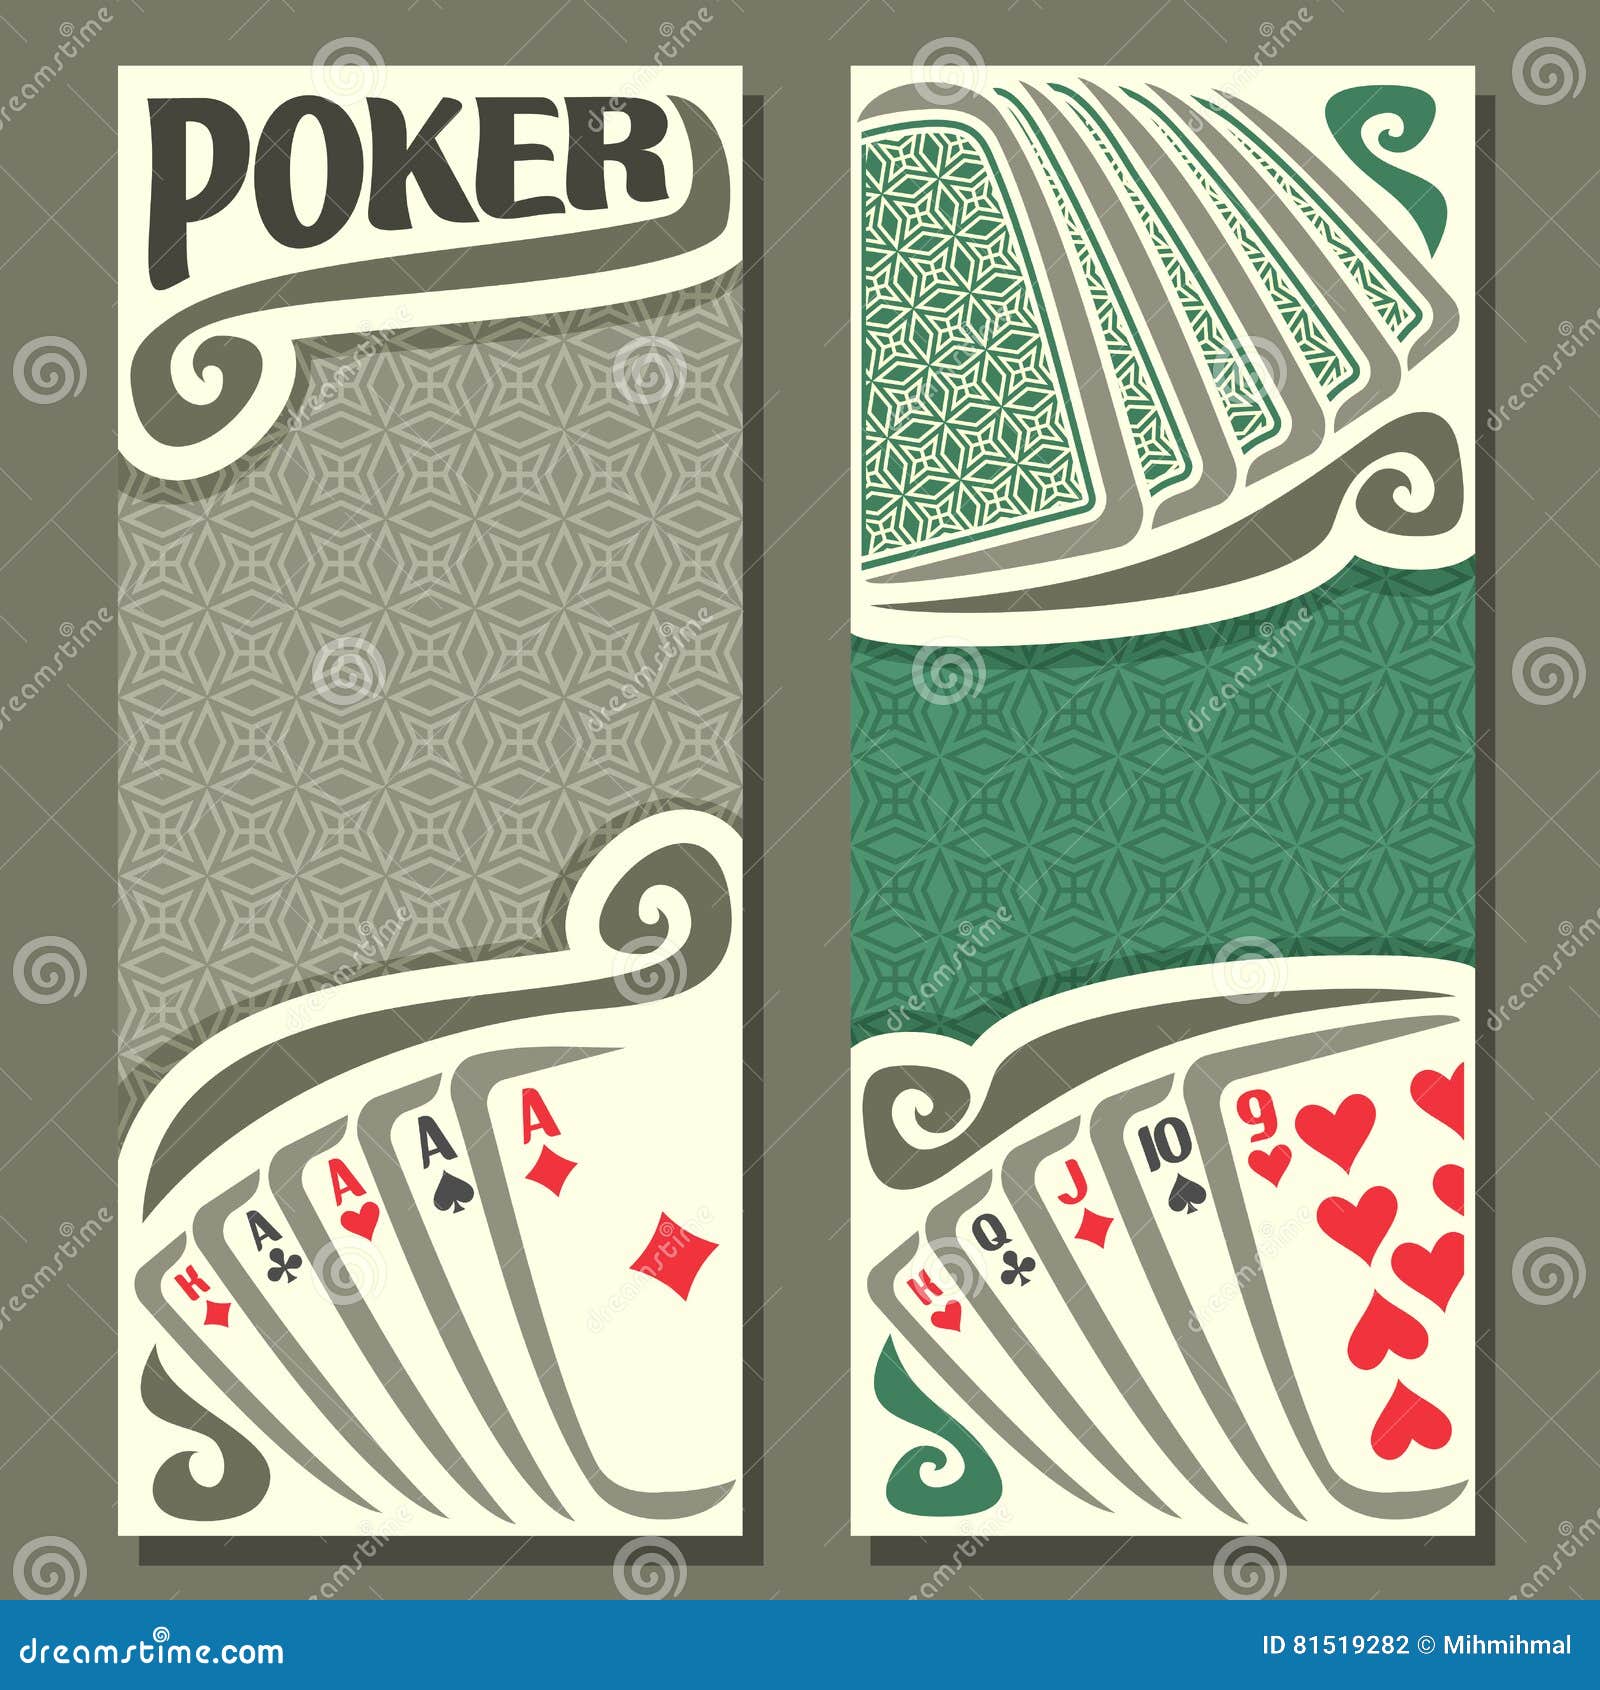 melhores slots pokerstars